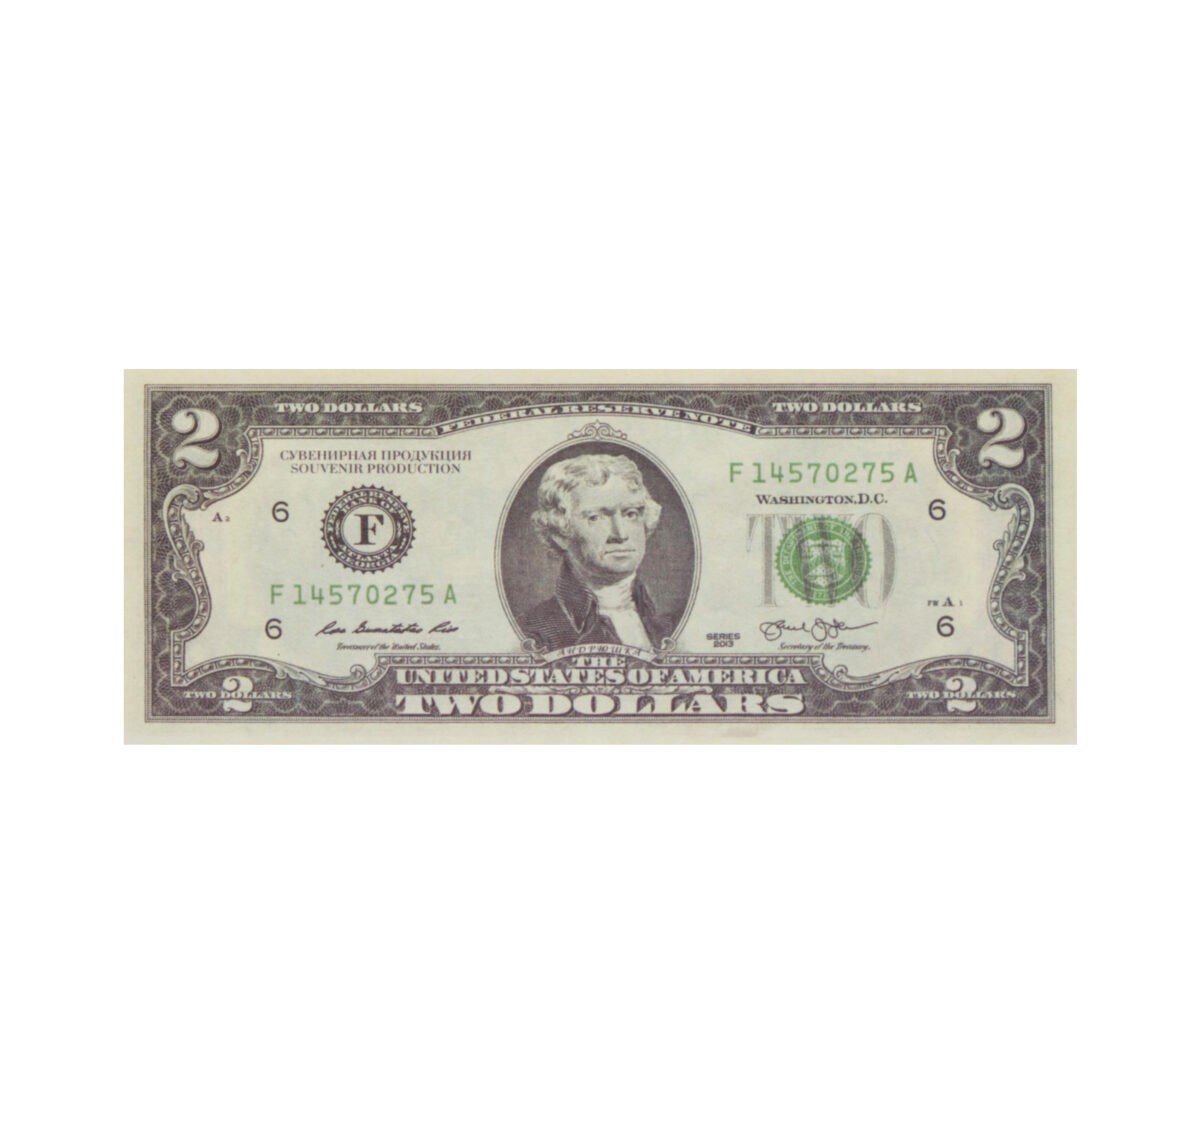 2 US dollars prop money stack